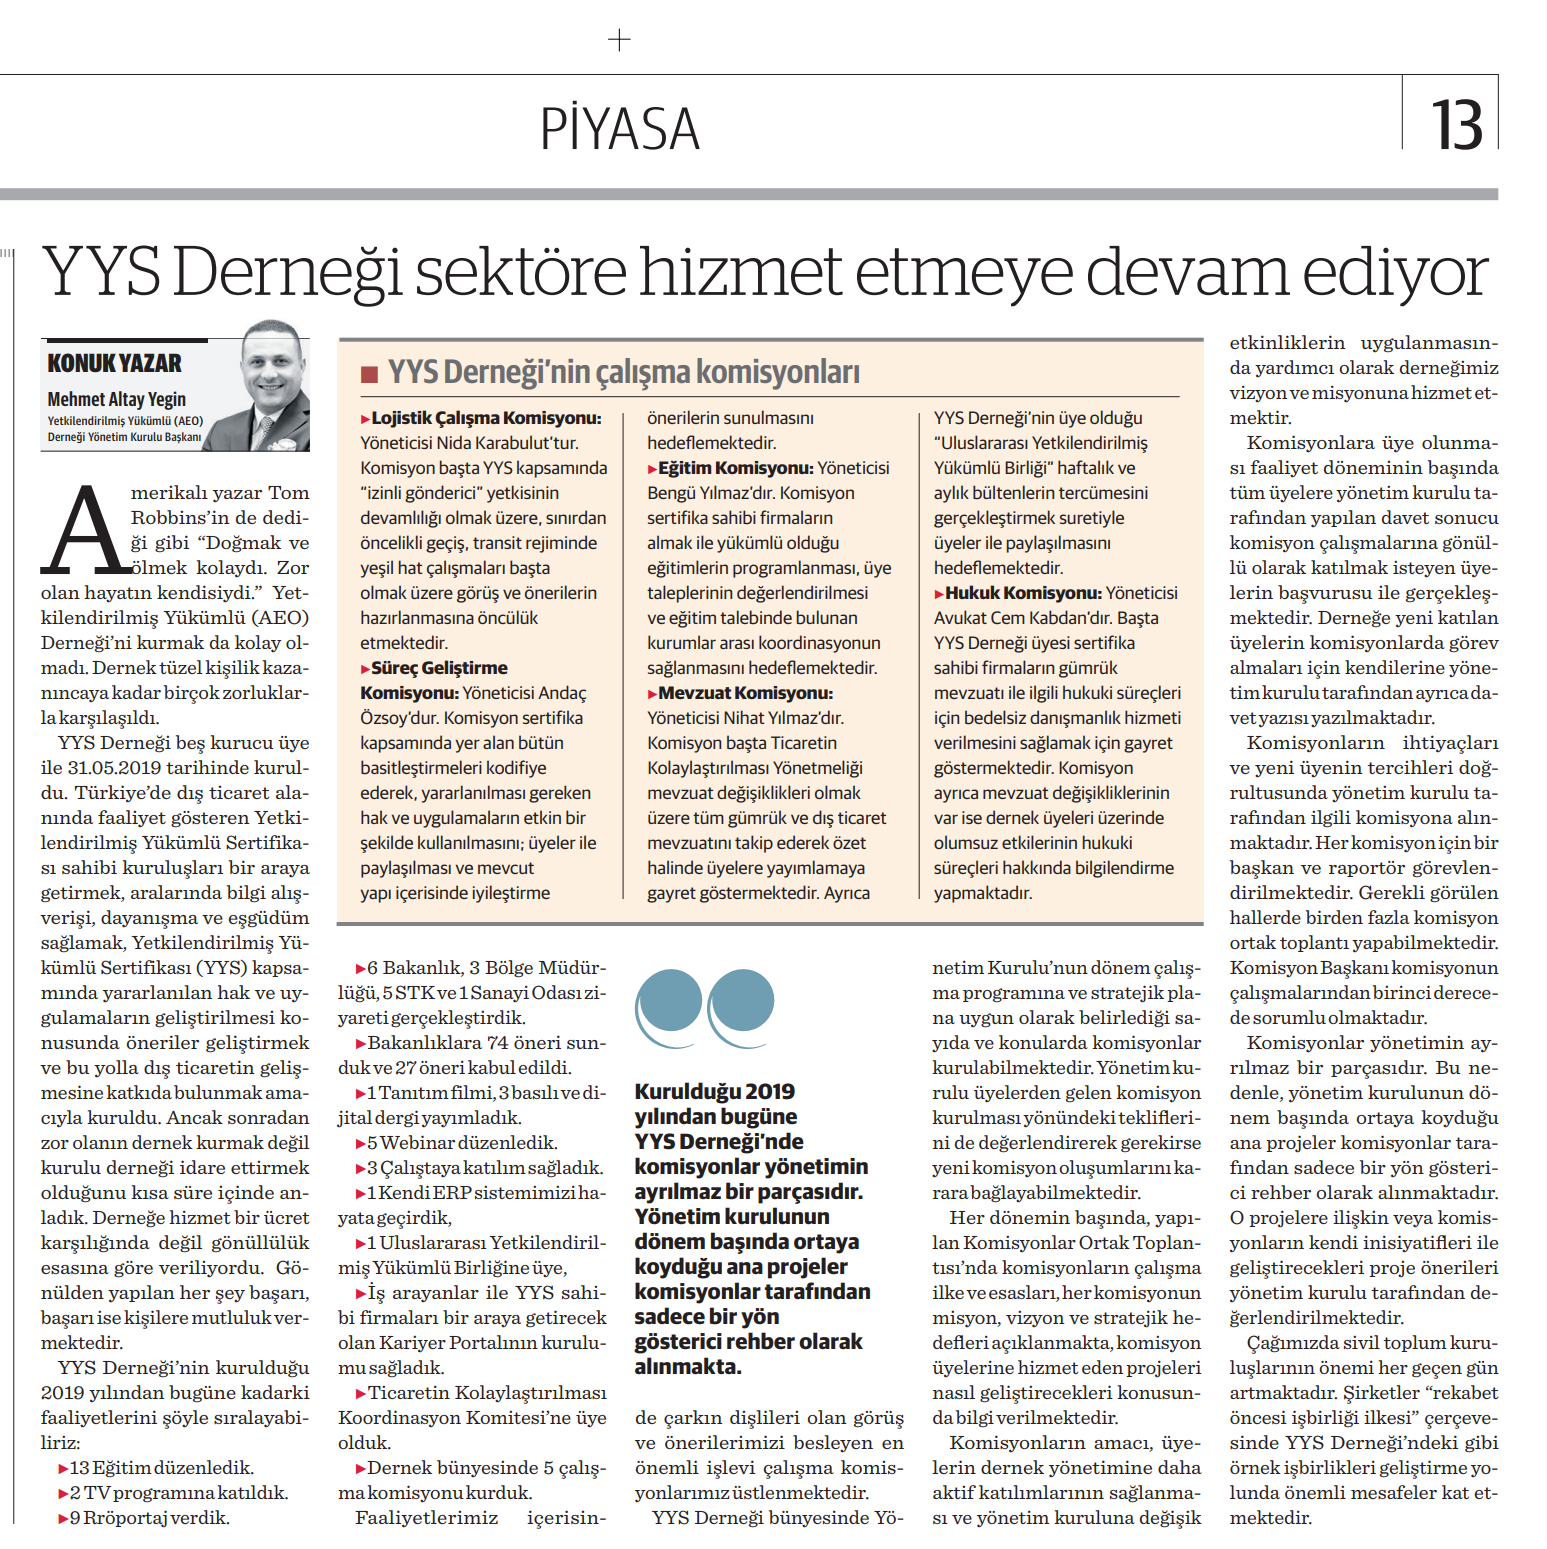 Yönetim Kurulu Başkanımız Mehmet Altay YEGİN'in YYS Derneği sektöre hizmet etmeye devam ediyor başlıklı kaleme aldığı makale "Nasıl Bir Ekonomi" gazetesinde yayımlandı.